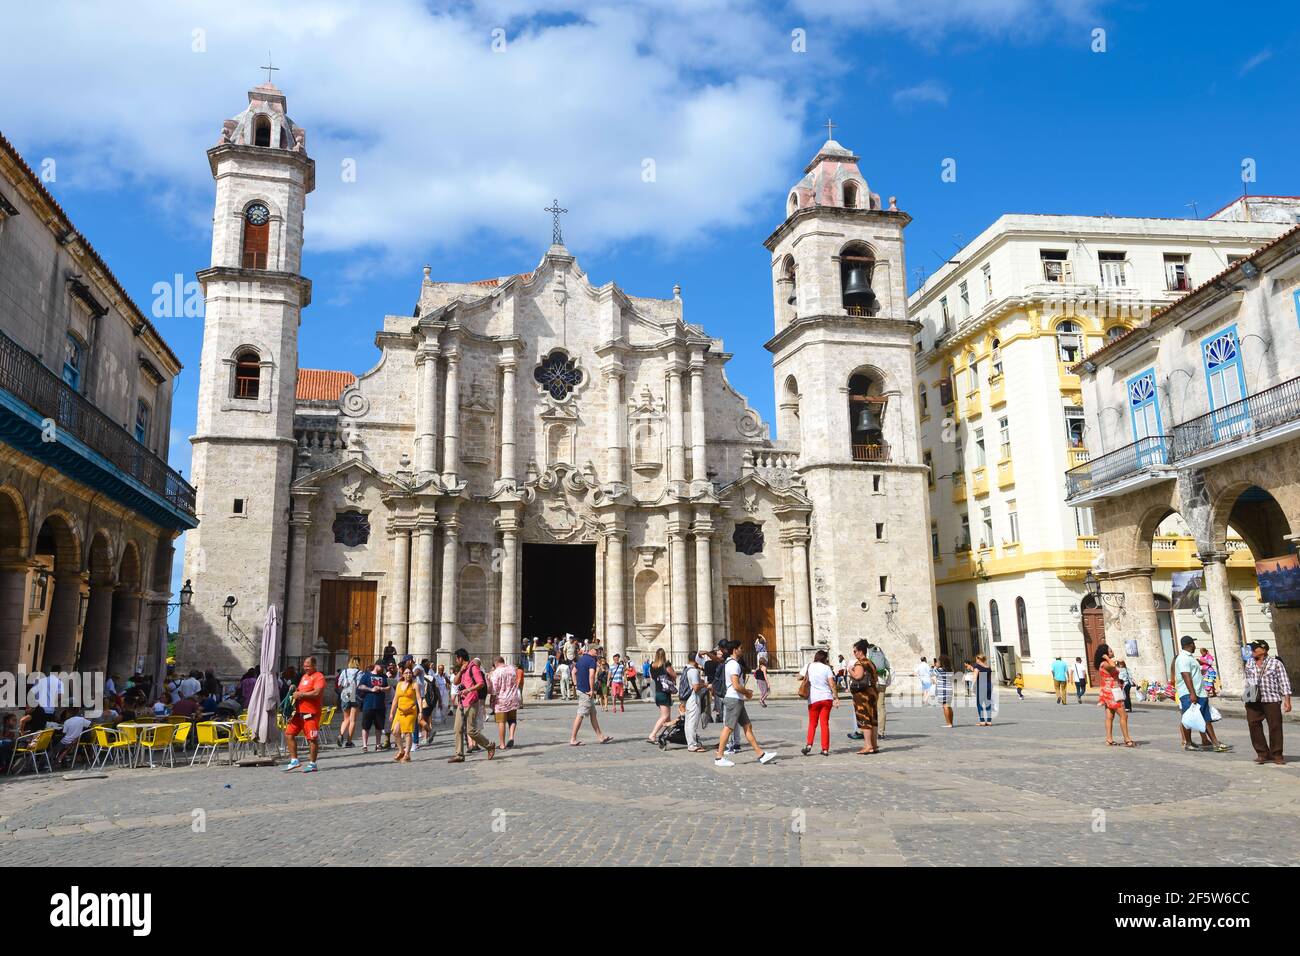 Turistas en la Plaza de la Catedral frente a la Catedral de San Cristóbal / Catedral de La Habana en Cuba. La Catedral de la Virgen María de La Habana. Foto de stock